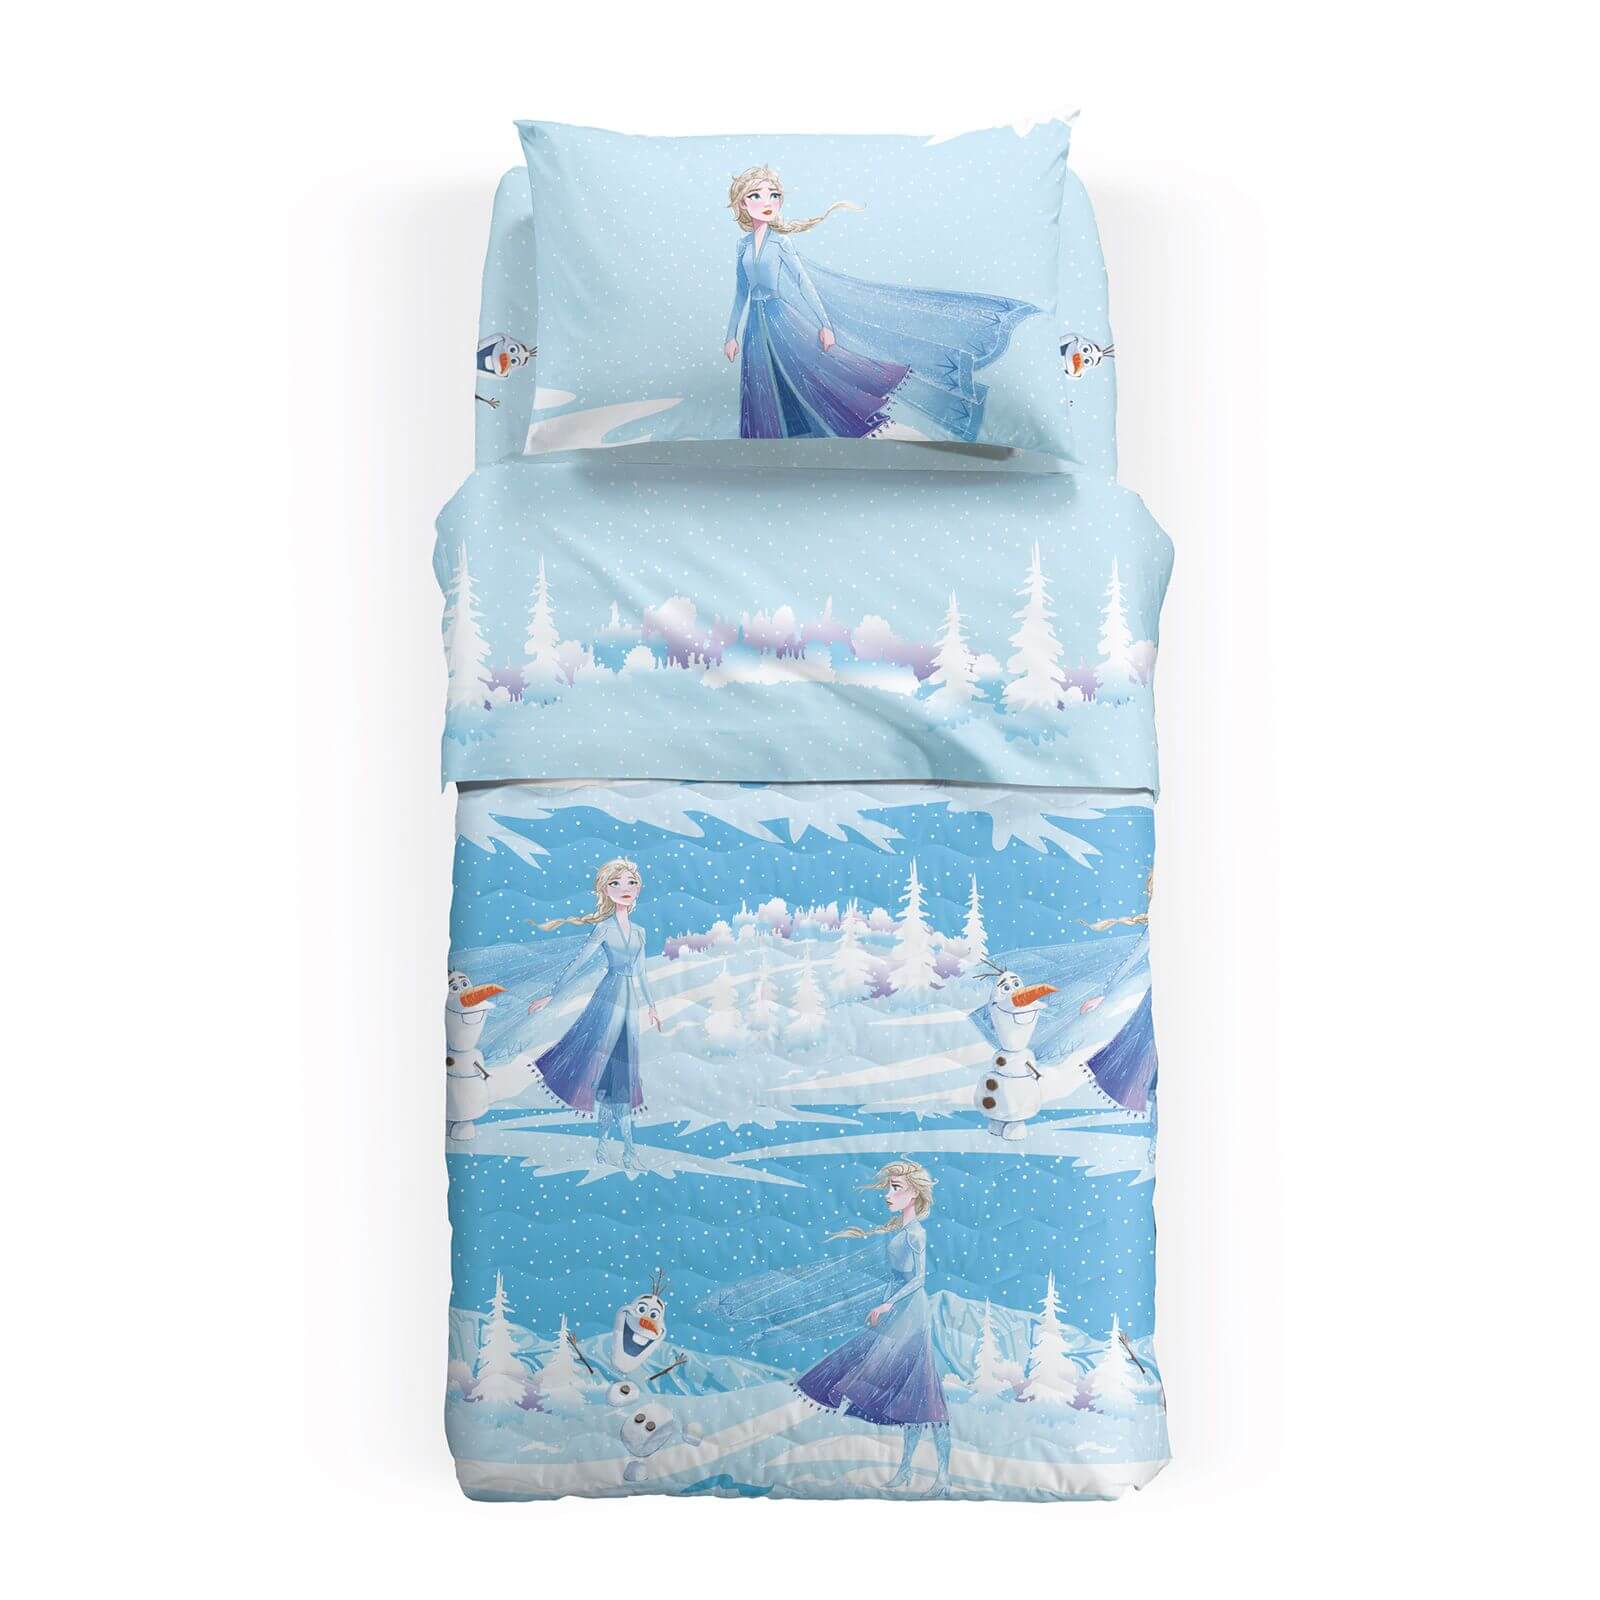 Trapuntino Caleffi Disney Frozen Inverno in microfibra per letto a una piazza. Fantasia azzurra con Elsa e Olaf.